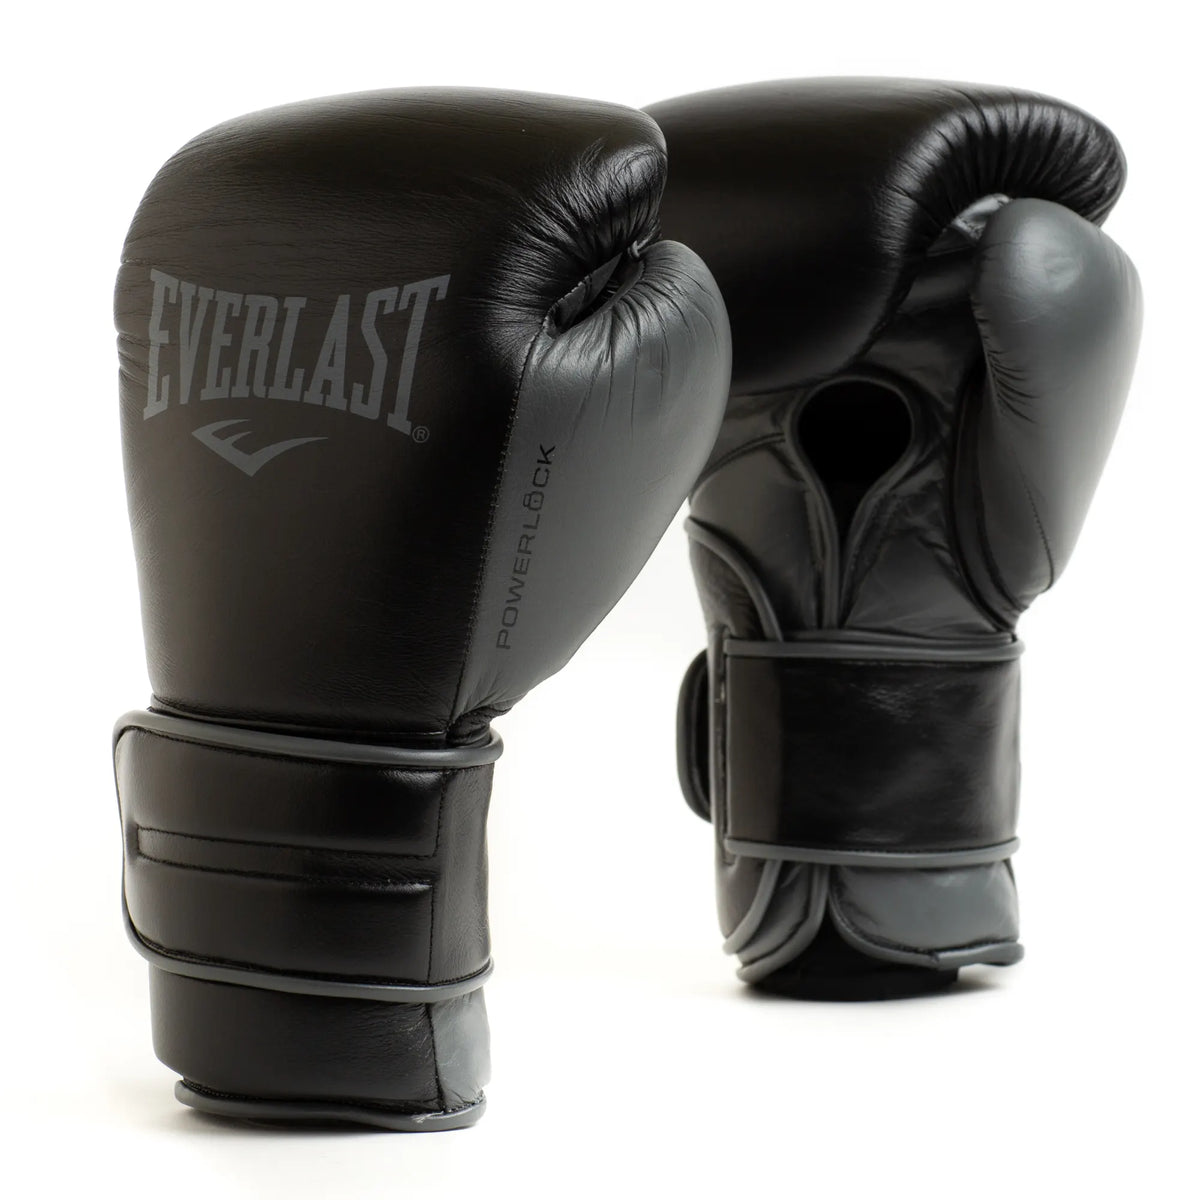 Powerlock 2 Pro Hook & Loop Boxing Gloves